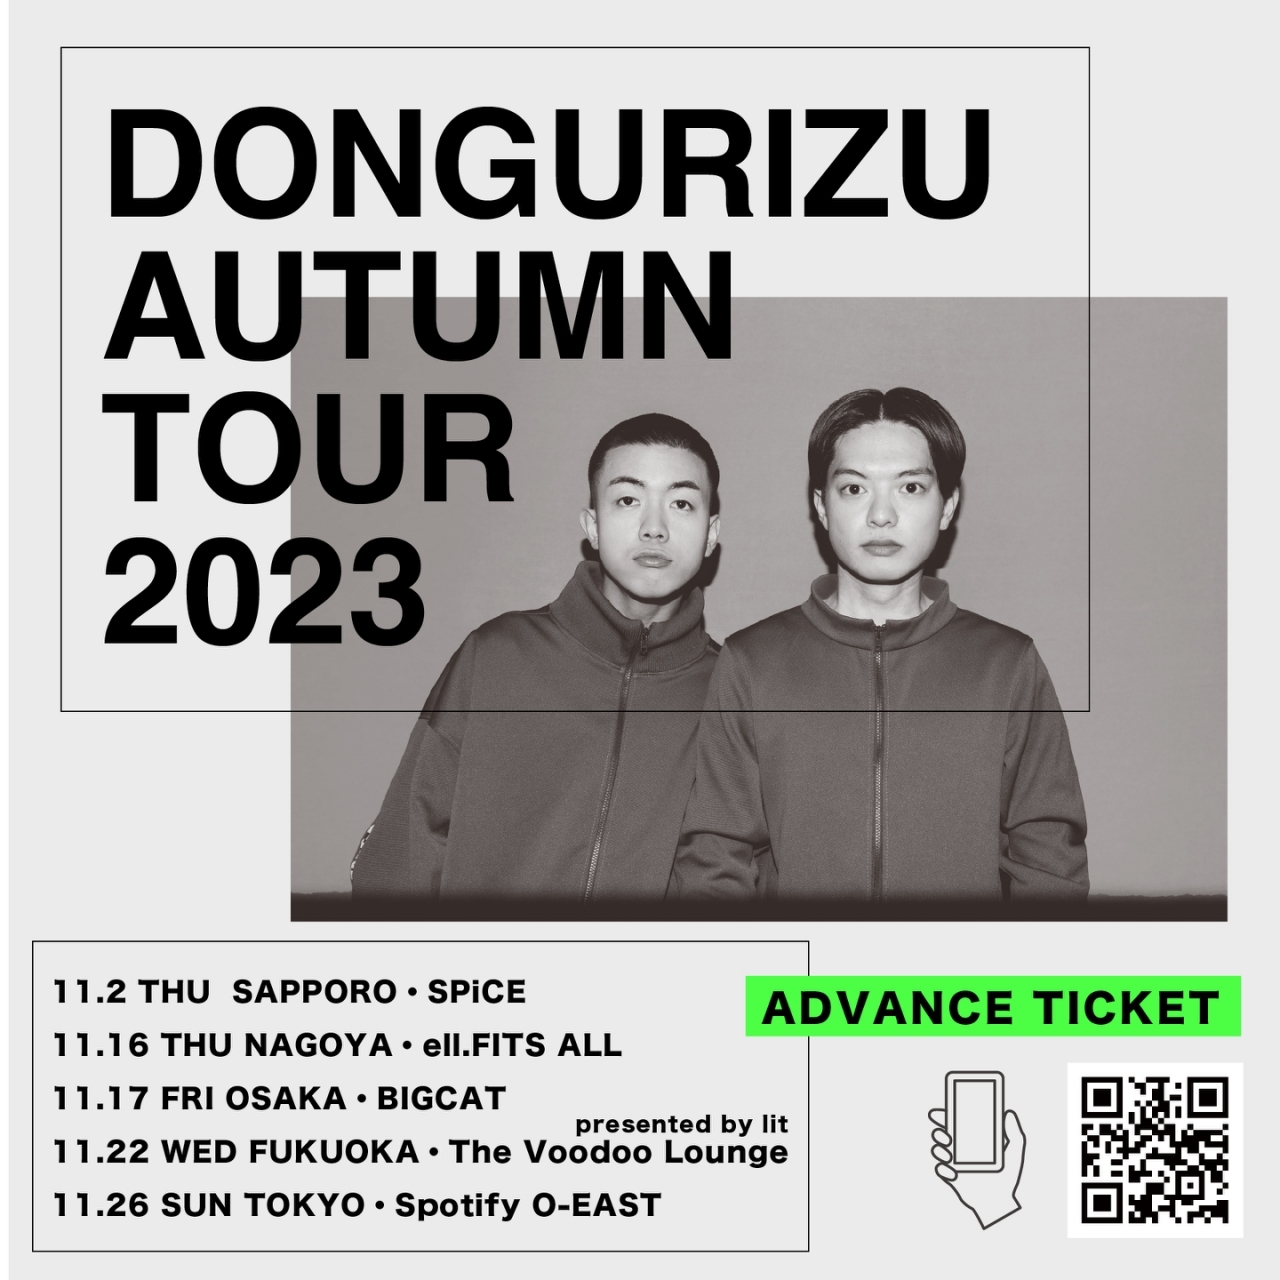 DONGURIZU AUTUMN TOUR 2023